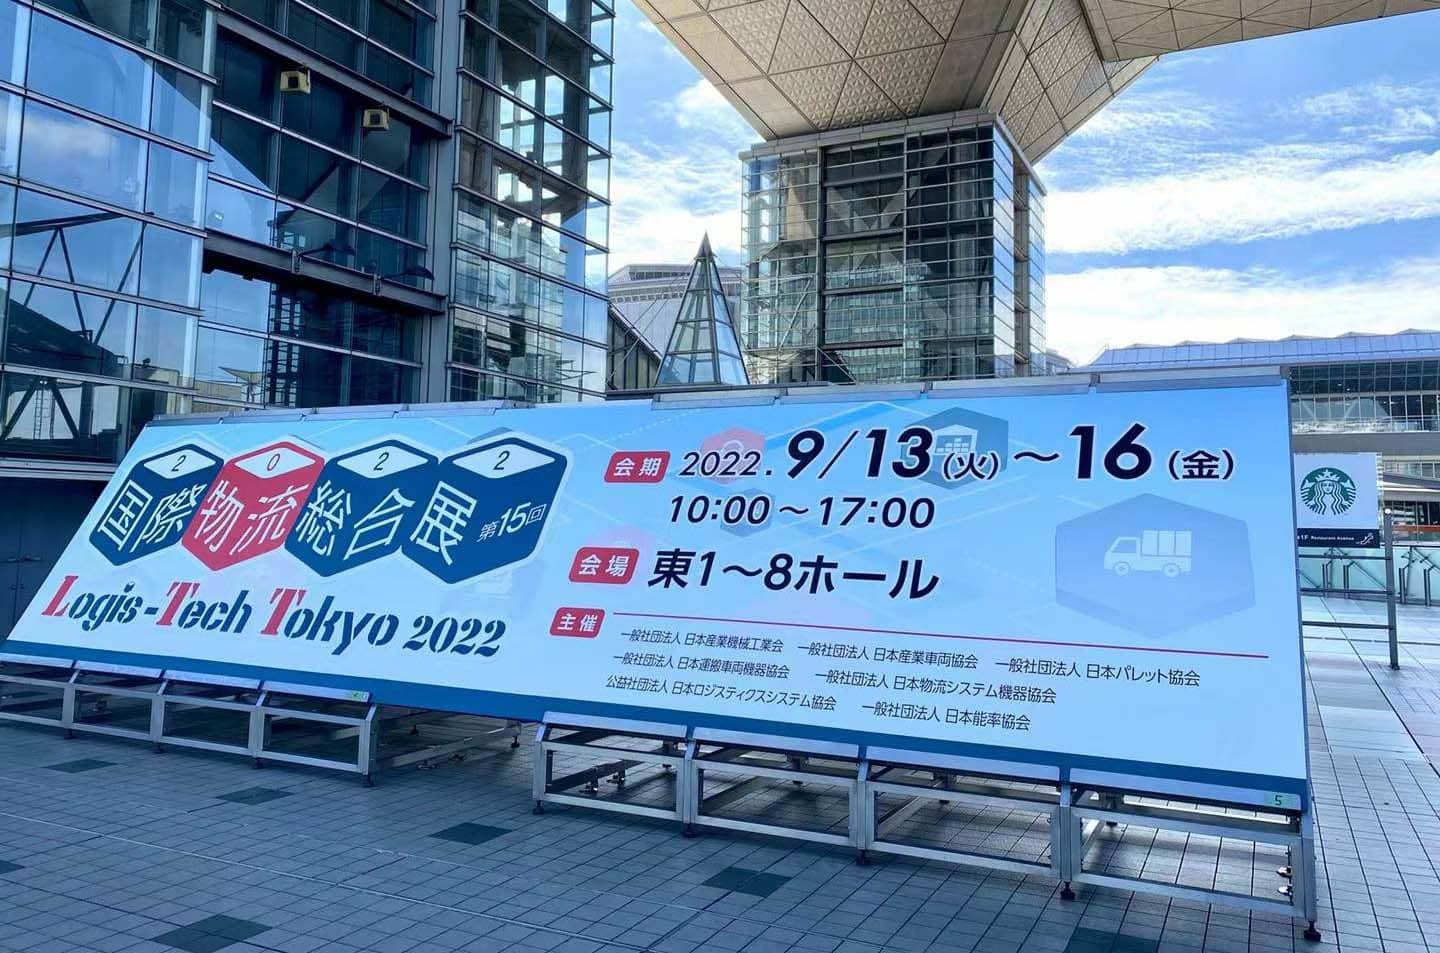 MIMA посещает Всемирный центр инноваций Logistics 2022-LTT Tokyo